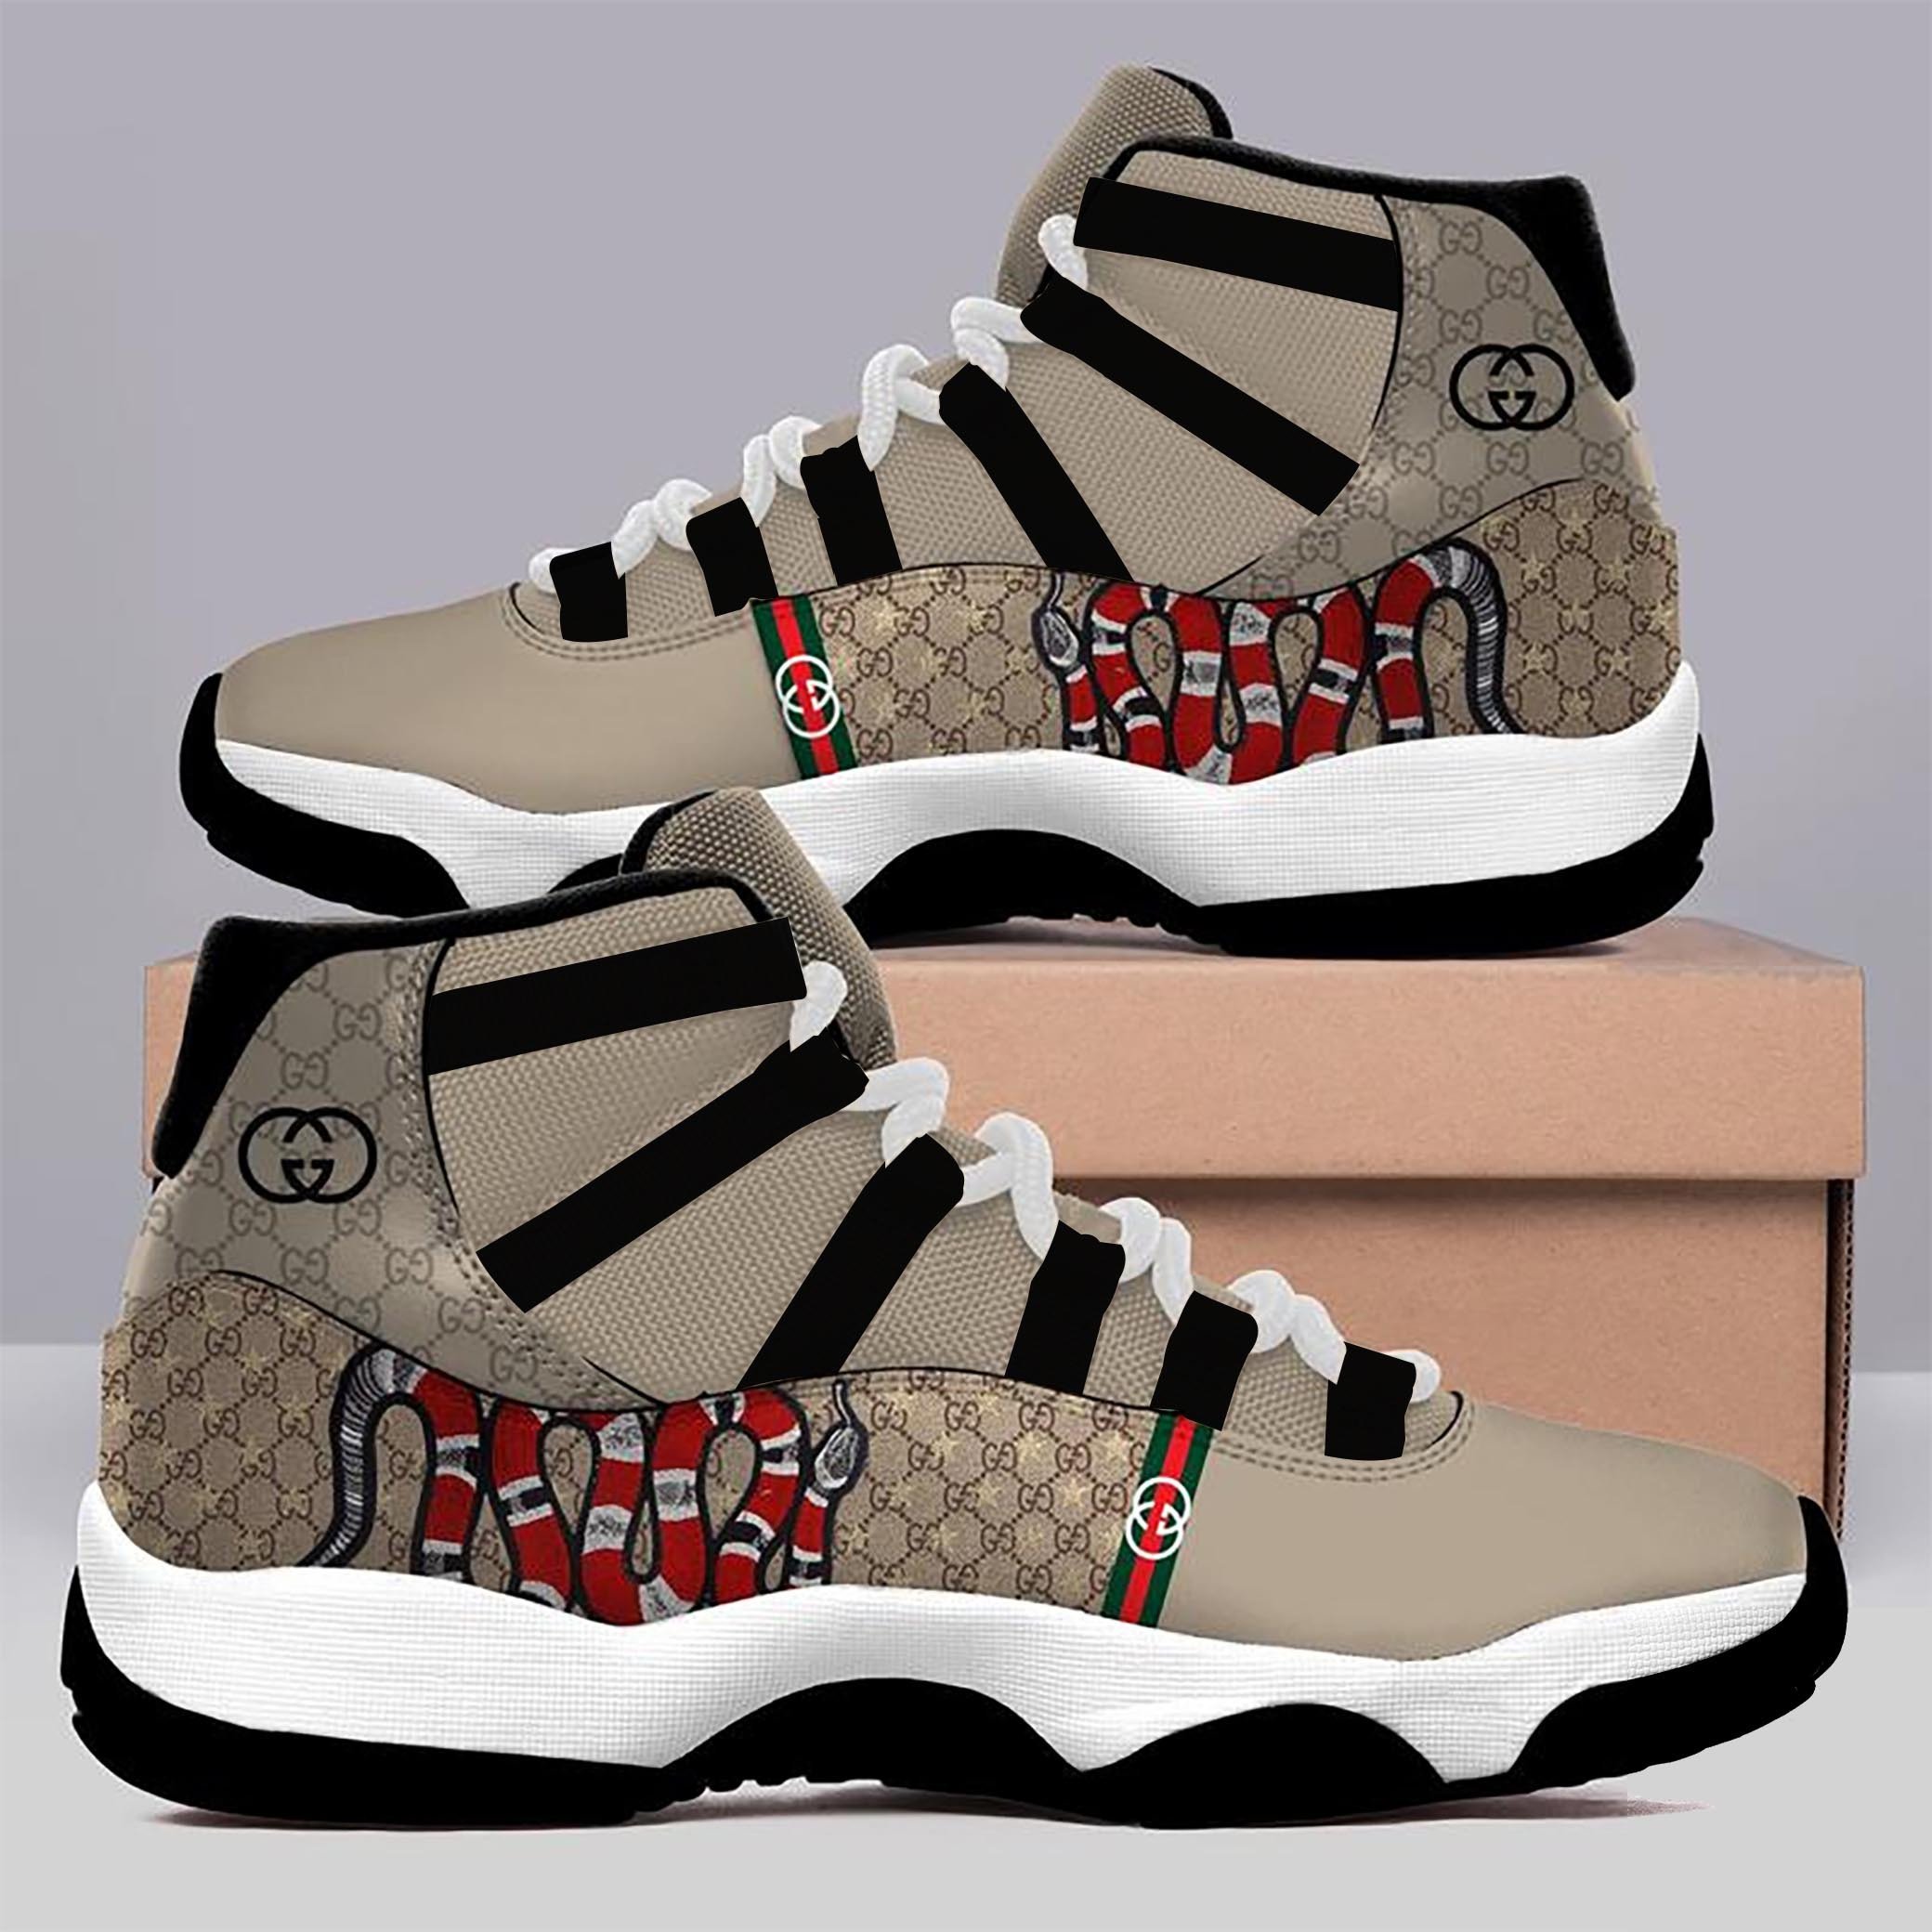 GC Snake Air Jordan 11 Sneakers Shoes  ver 13